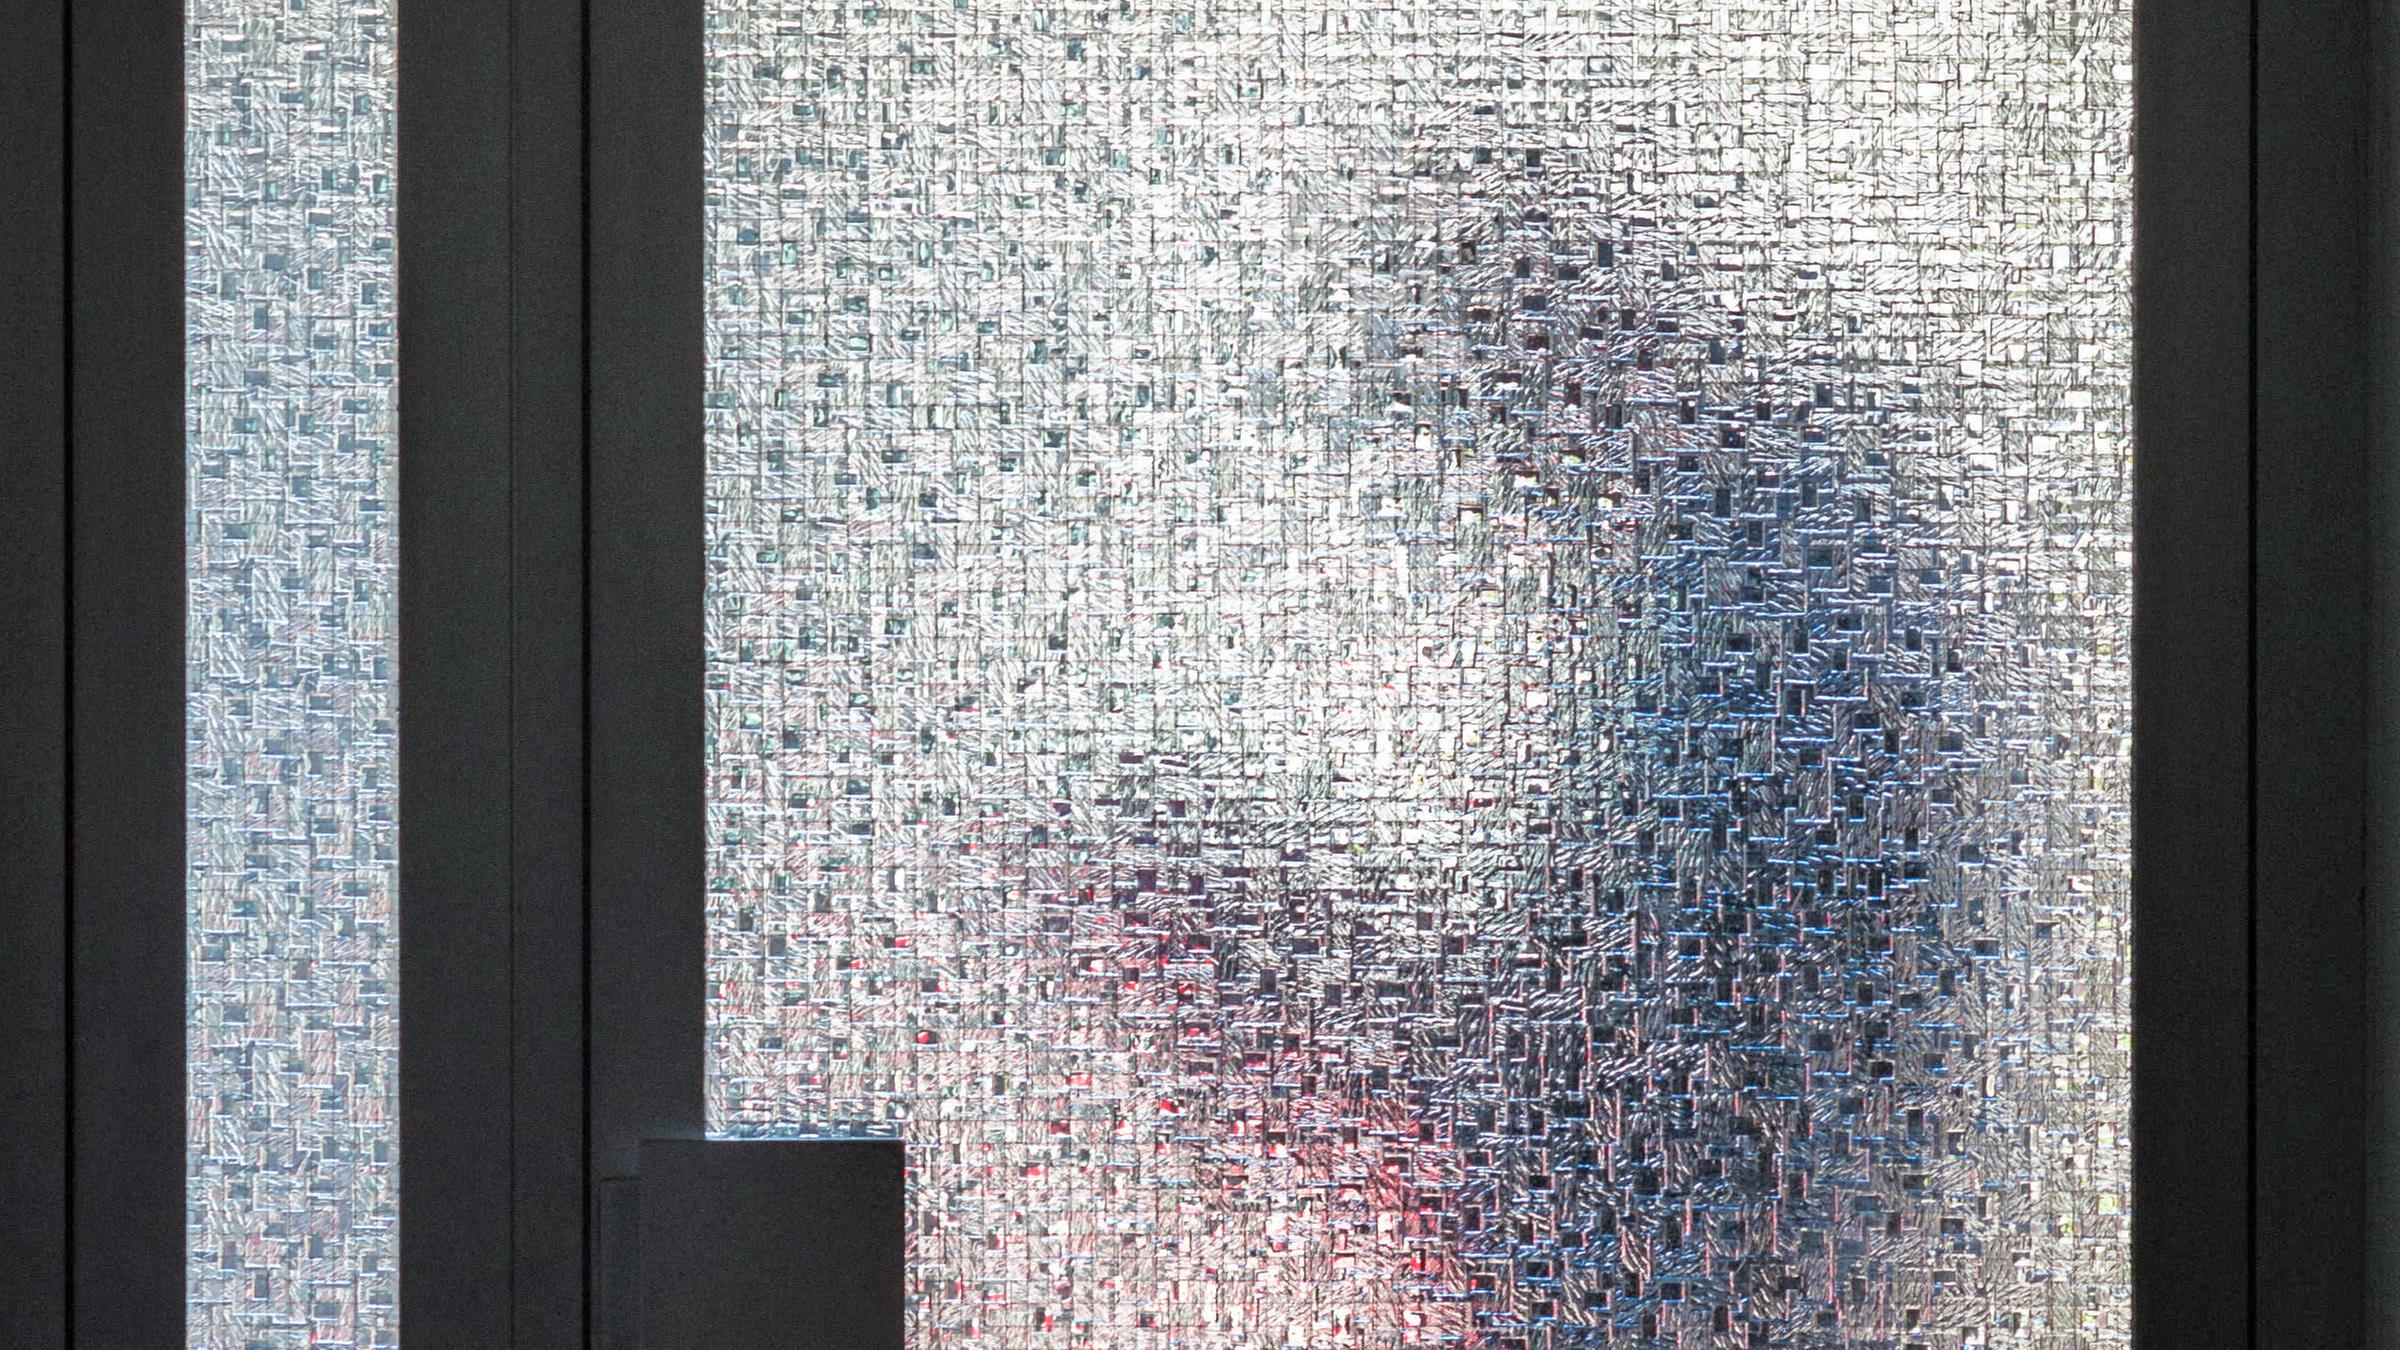 Silhouette eines Mannes mit Smartphone in den Händen, aufgenommen durch ein strukturierte Glastür eines Hauses.